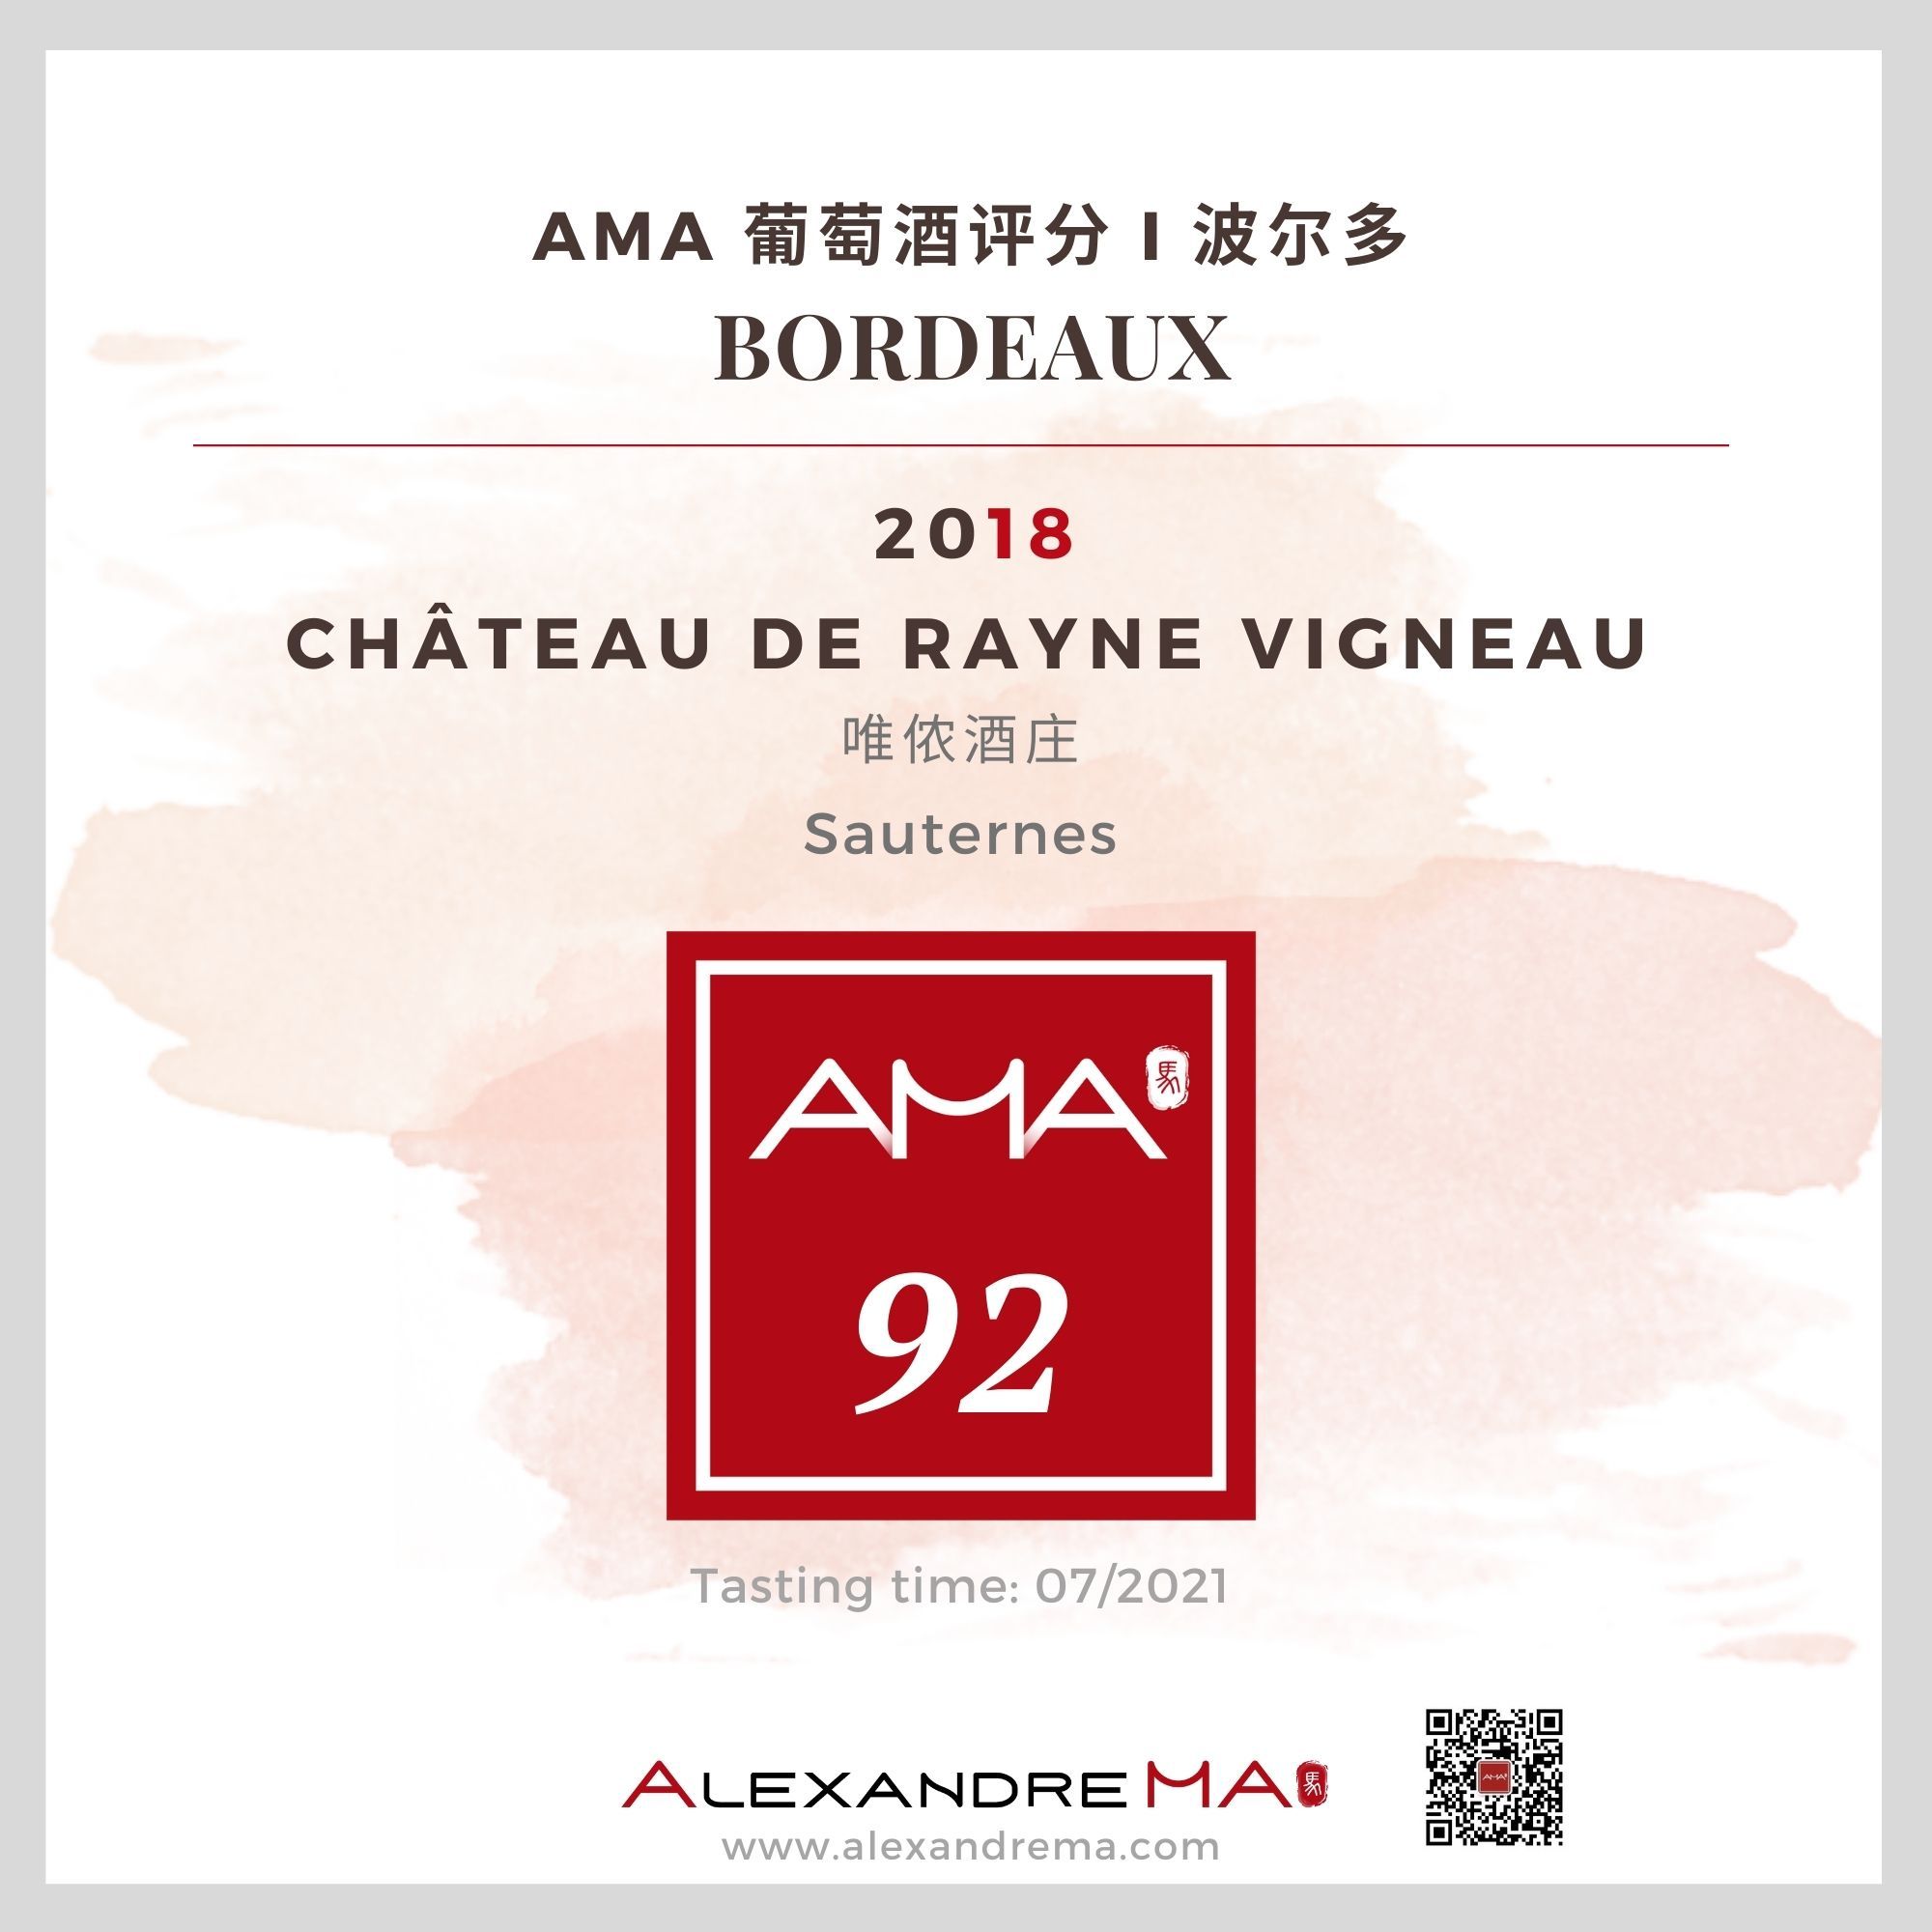 Château de Rayne Vigneau 2018 唯侬酒庄 - Alexandre Ma